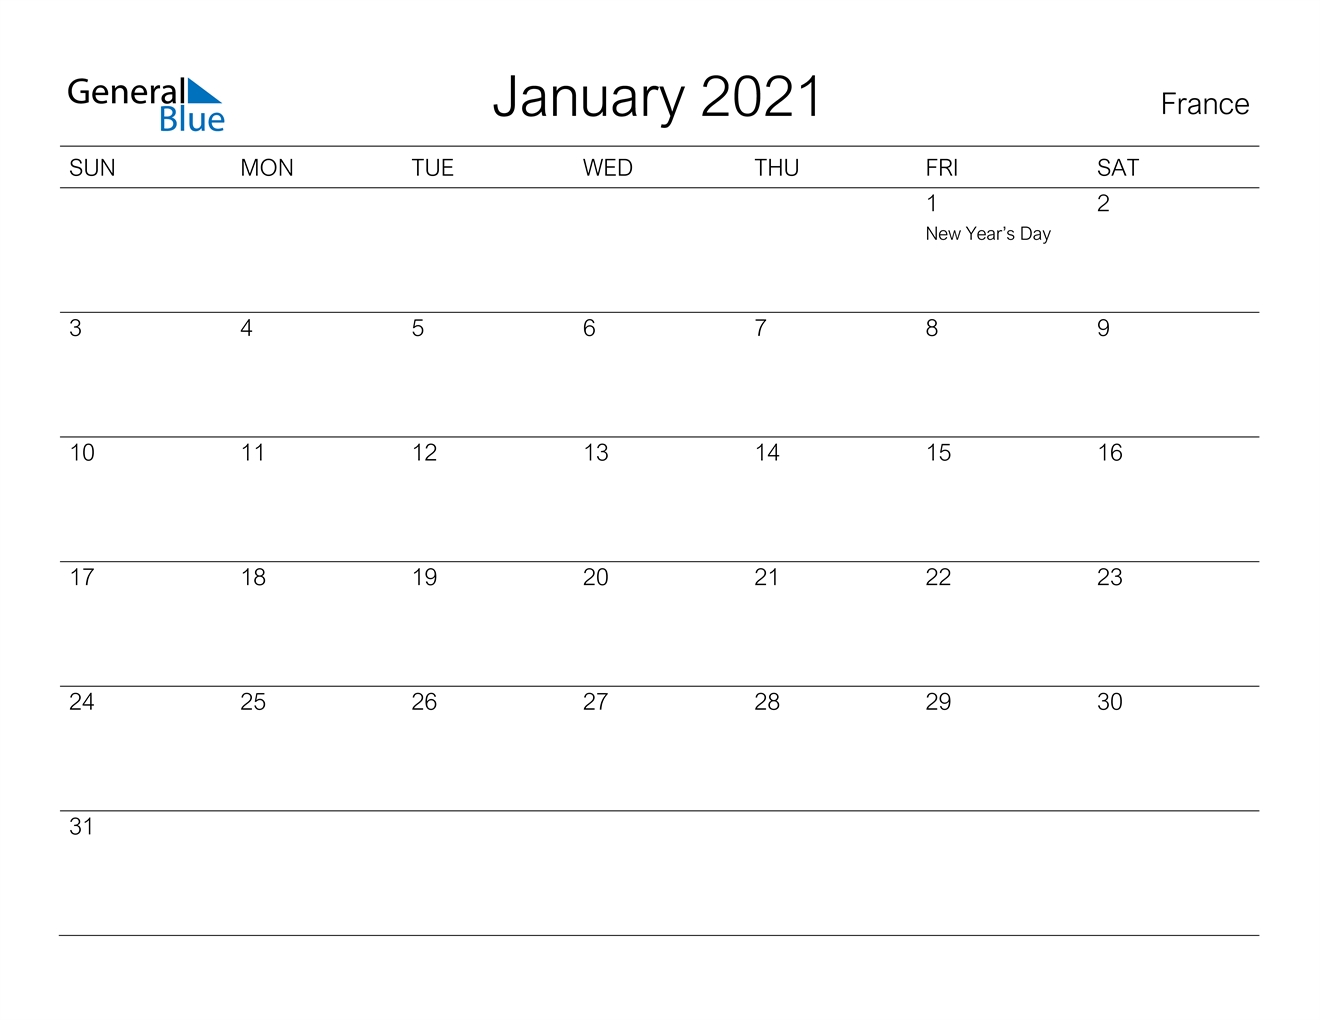 January 2021 Calendar - France